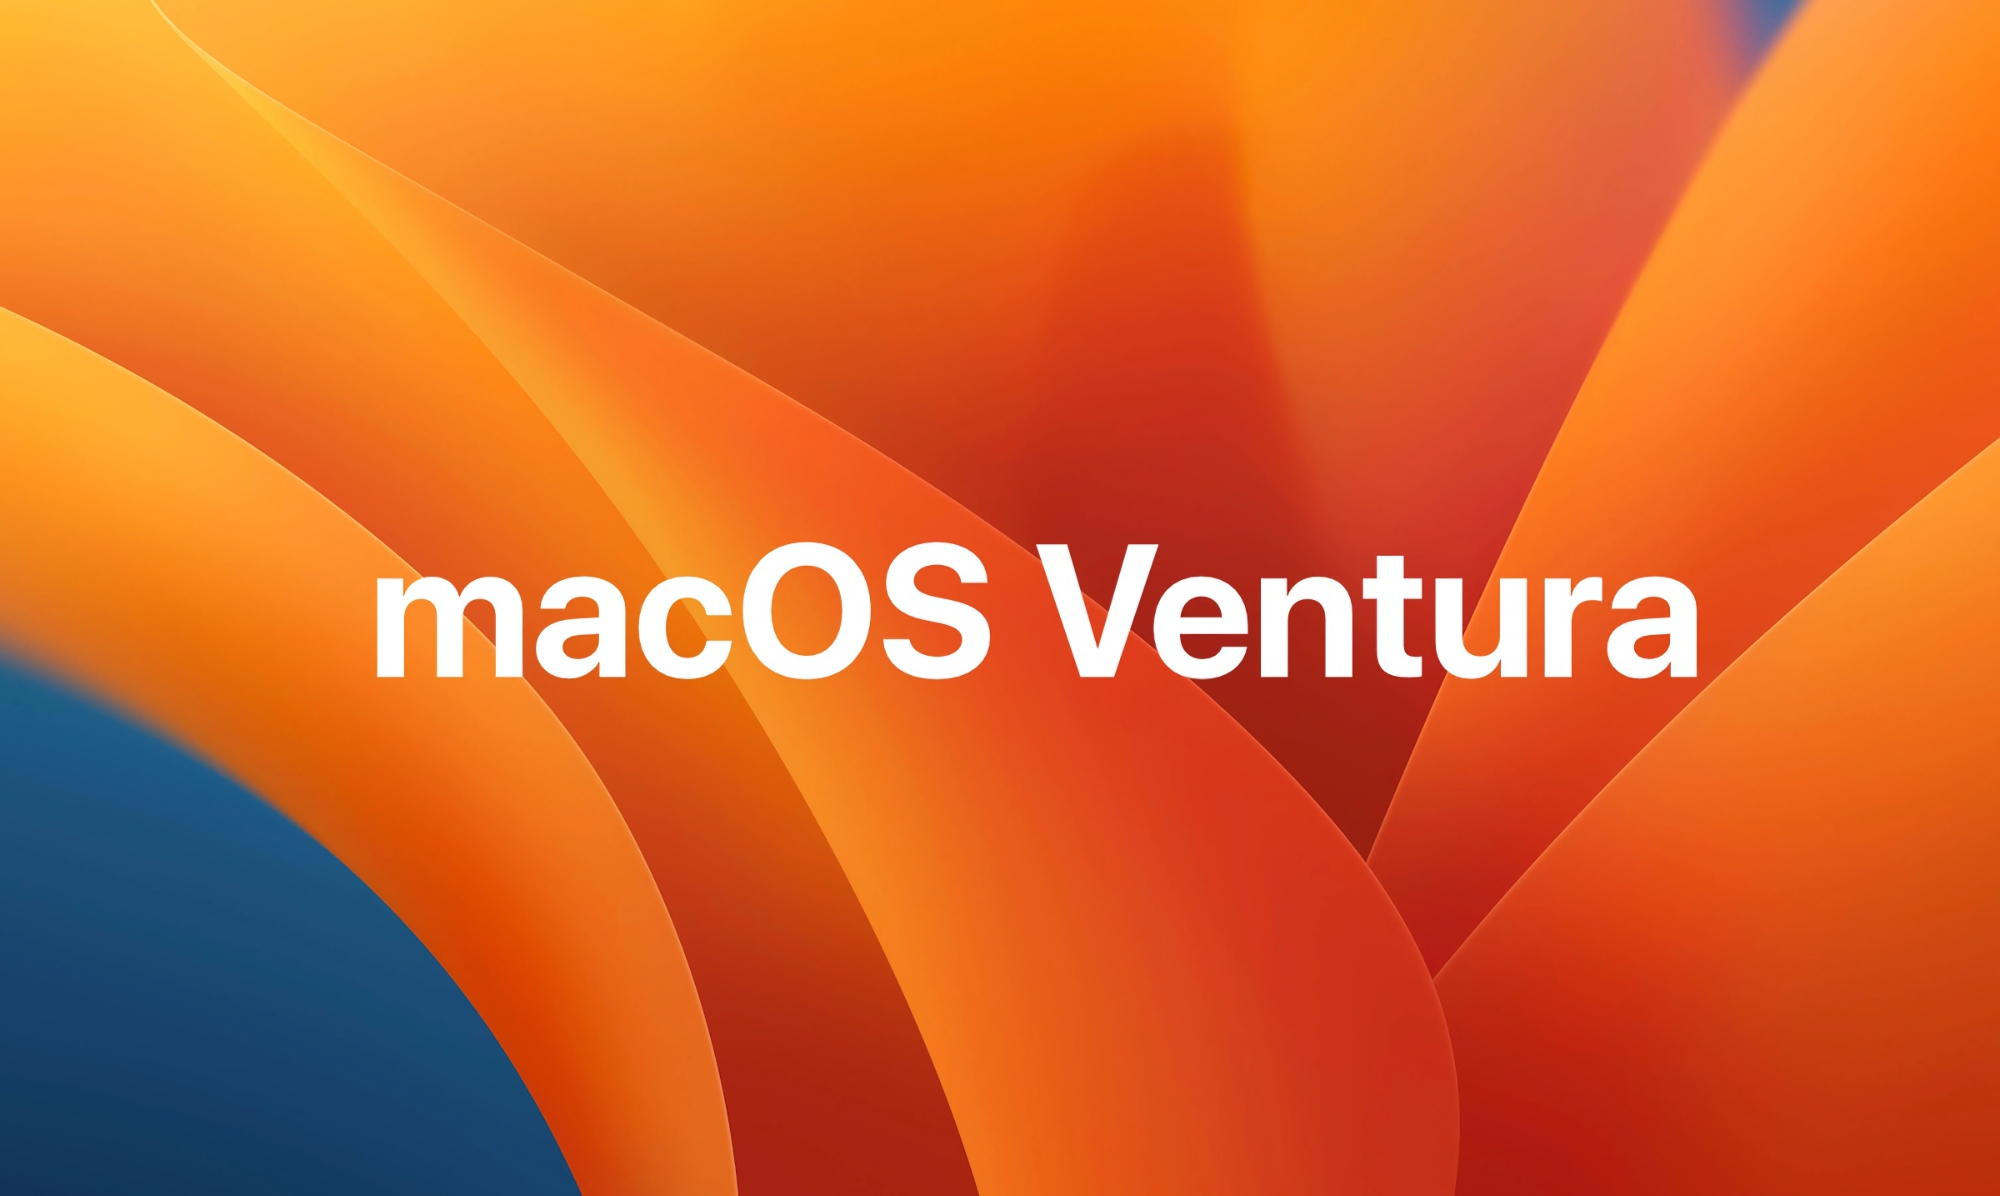 Po iOS 16.4 Beta 2: pojawiła się druga testowa wersja macOS Ventura 13.3